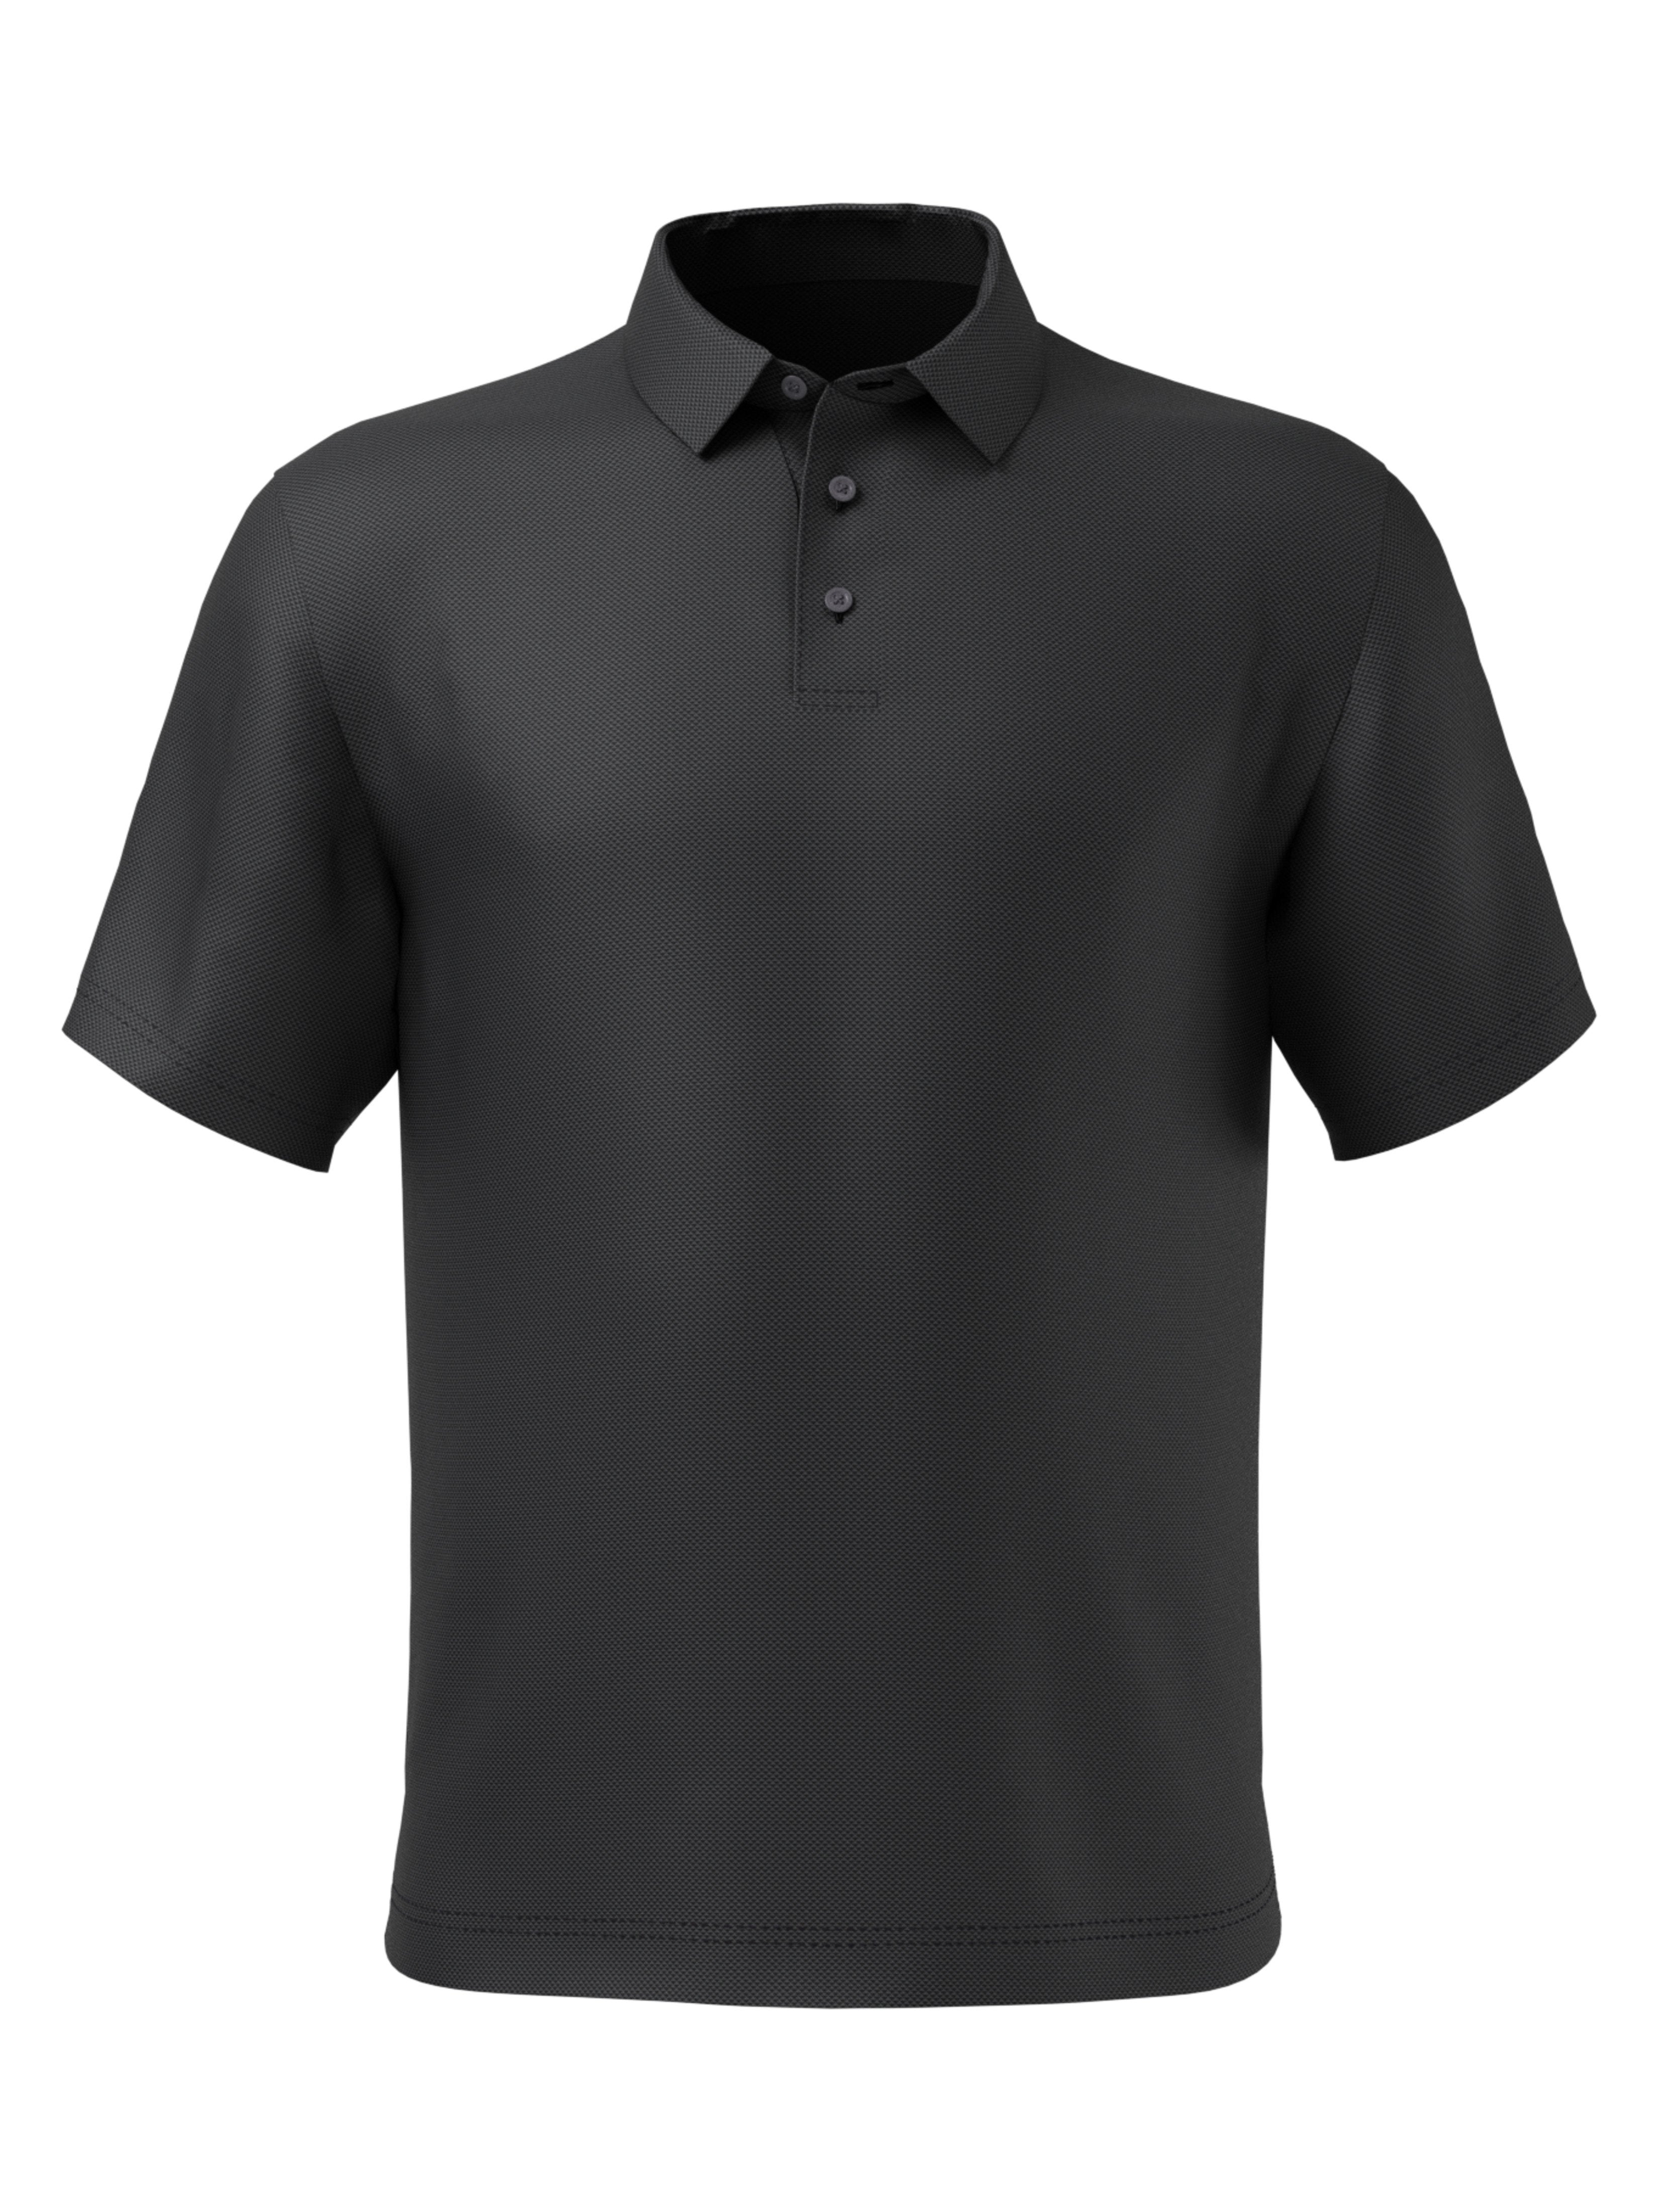 PGA TOUR Apparel Mens Mini Geometric Jacquard Polo Shirt, Size Medium, Black, 100% Polyester | Golf Apparel Shop